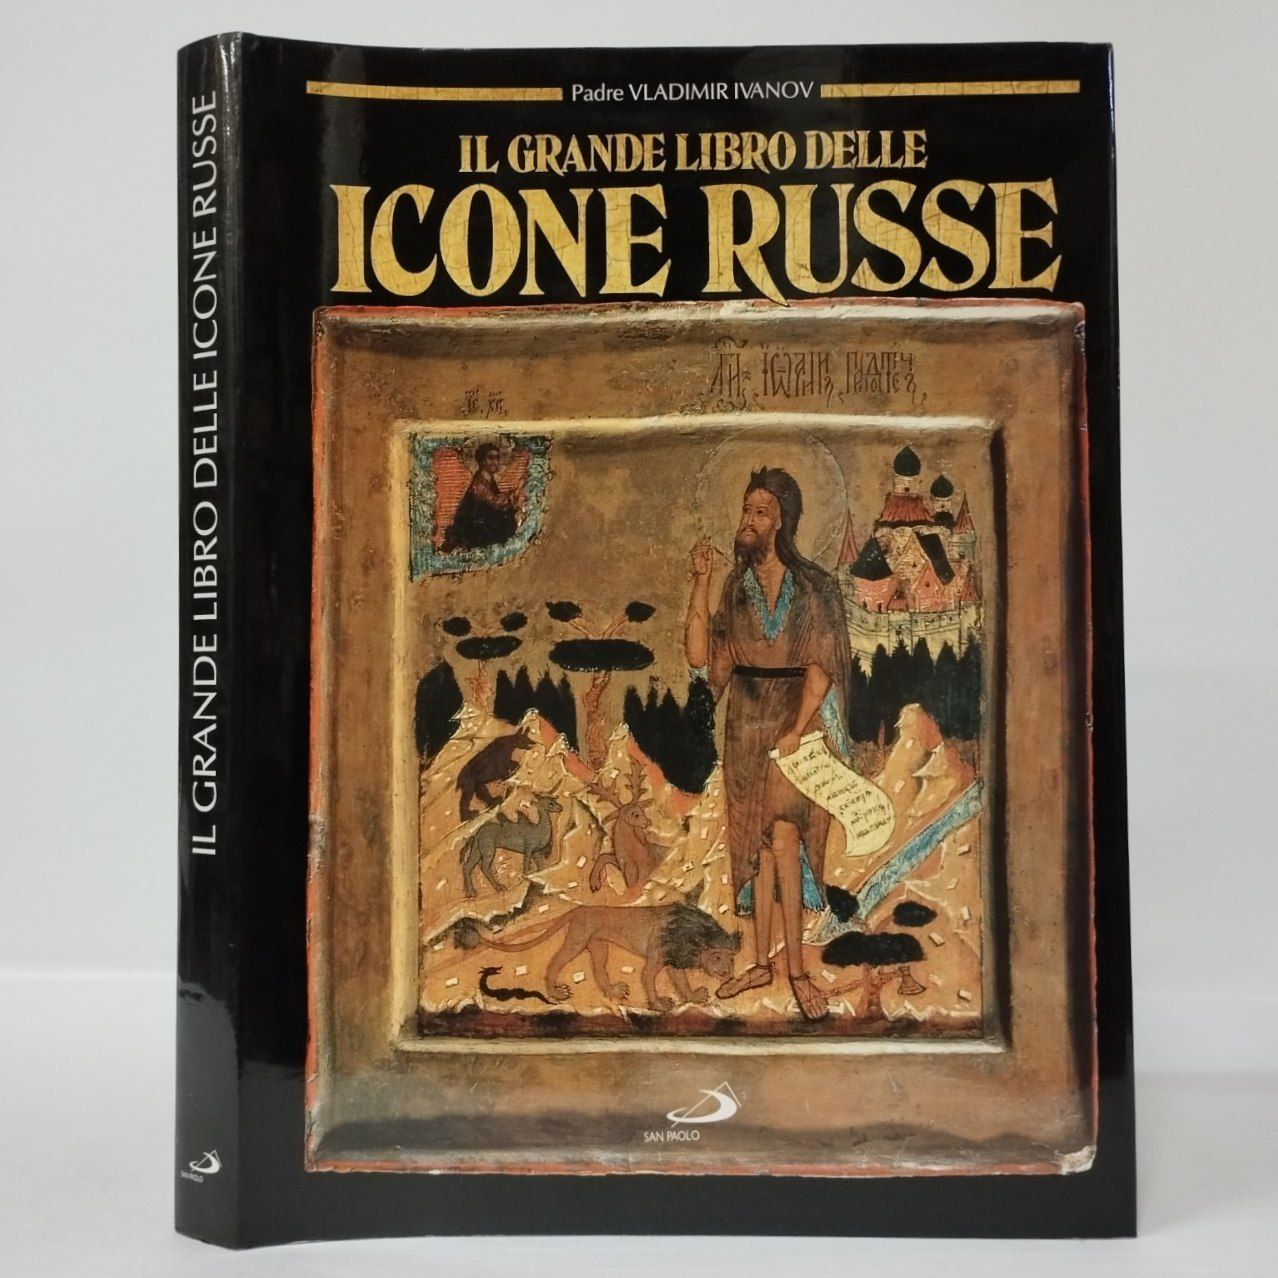 Grande libro delle icone russe (Il). Padre Vladimir Ivanov. San Paolo,  1995. - Equilibri Libreria Torino